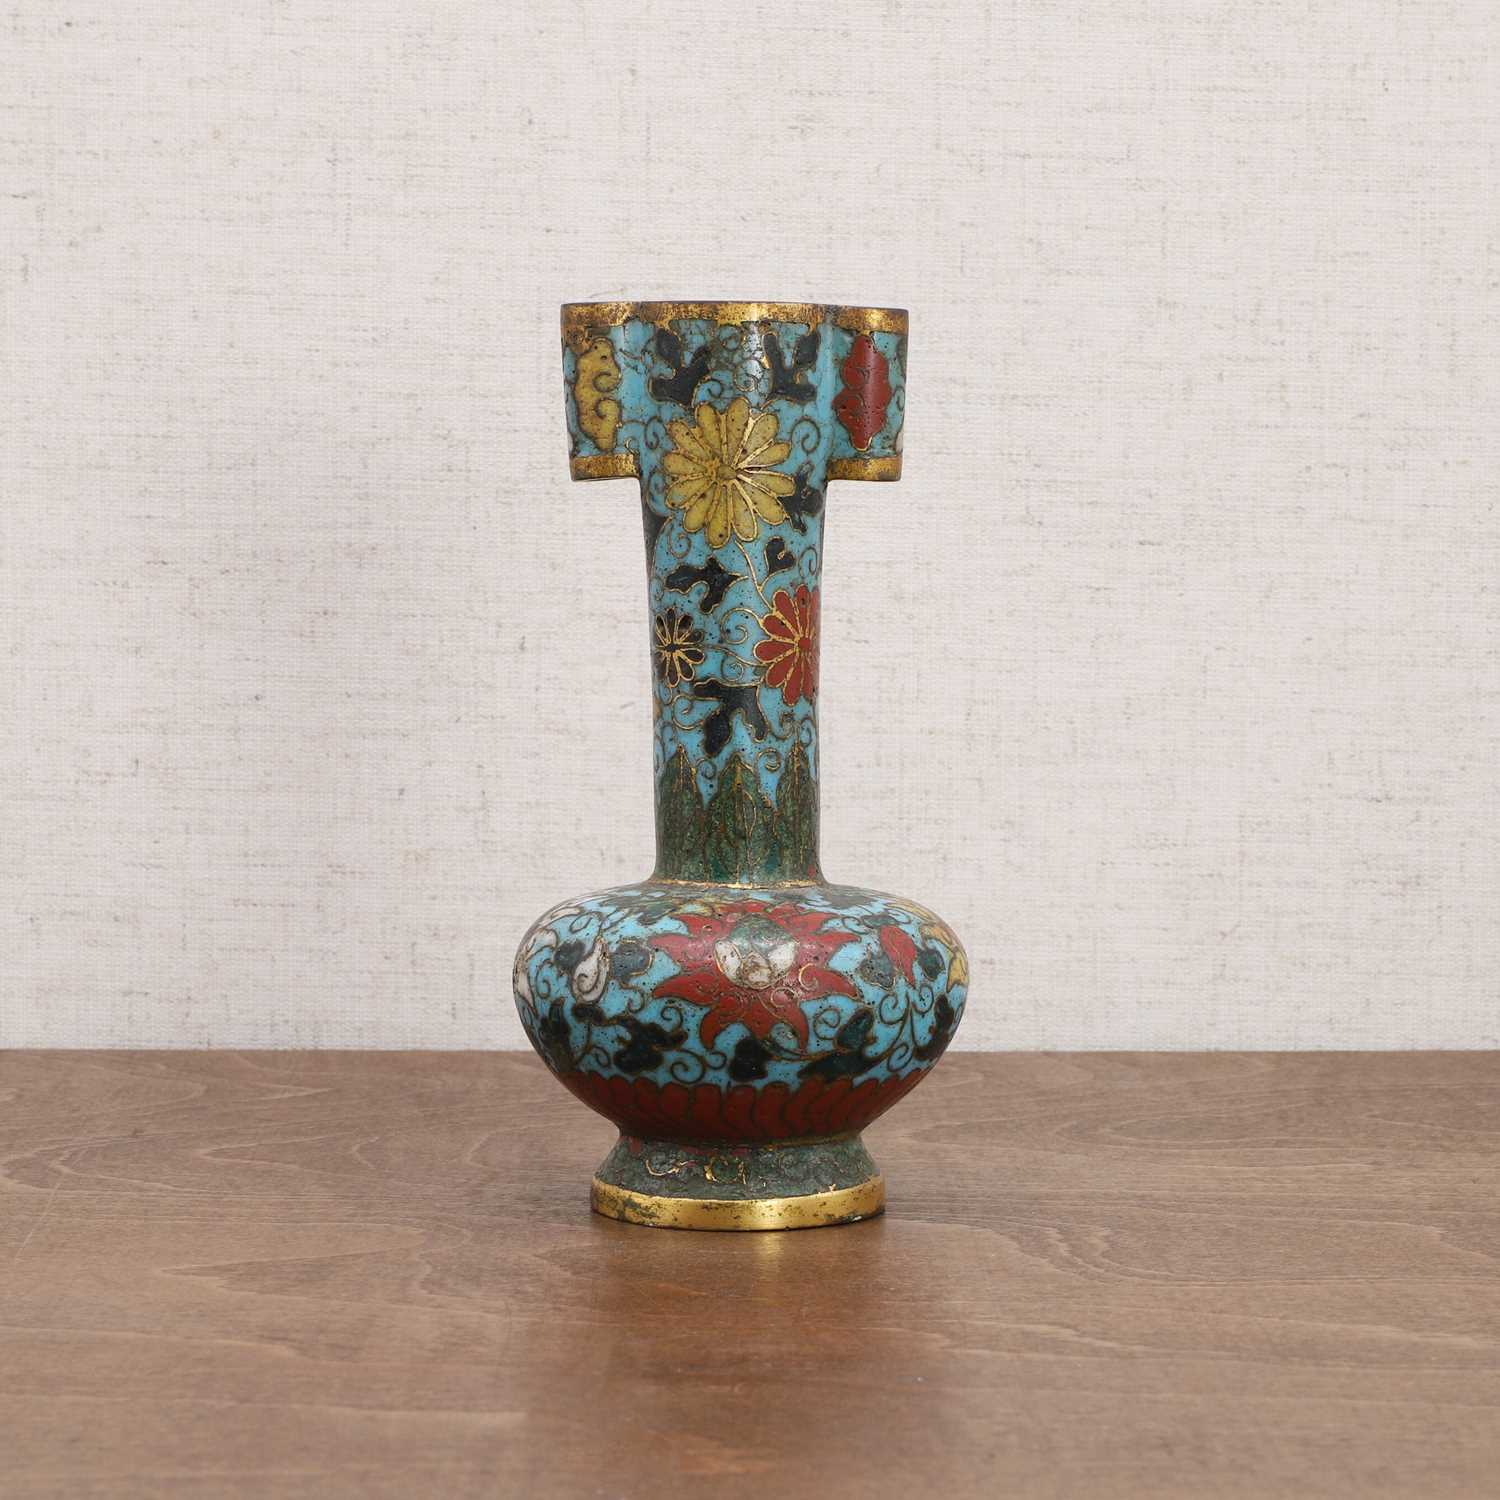 Lot 124 - A Chinese cloisonné arrow vase